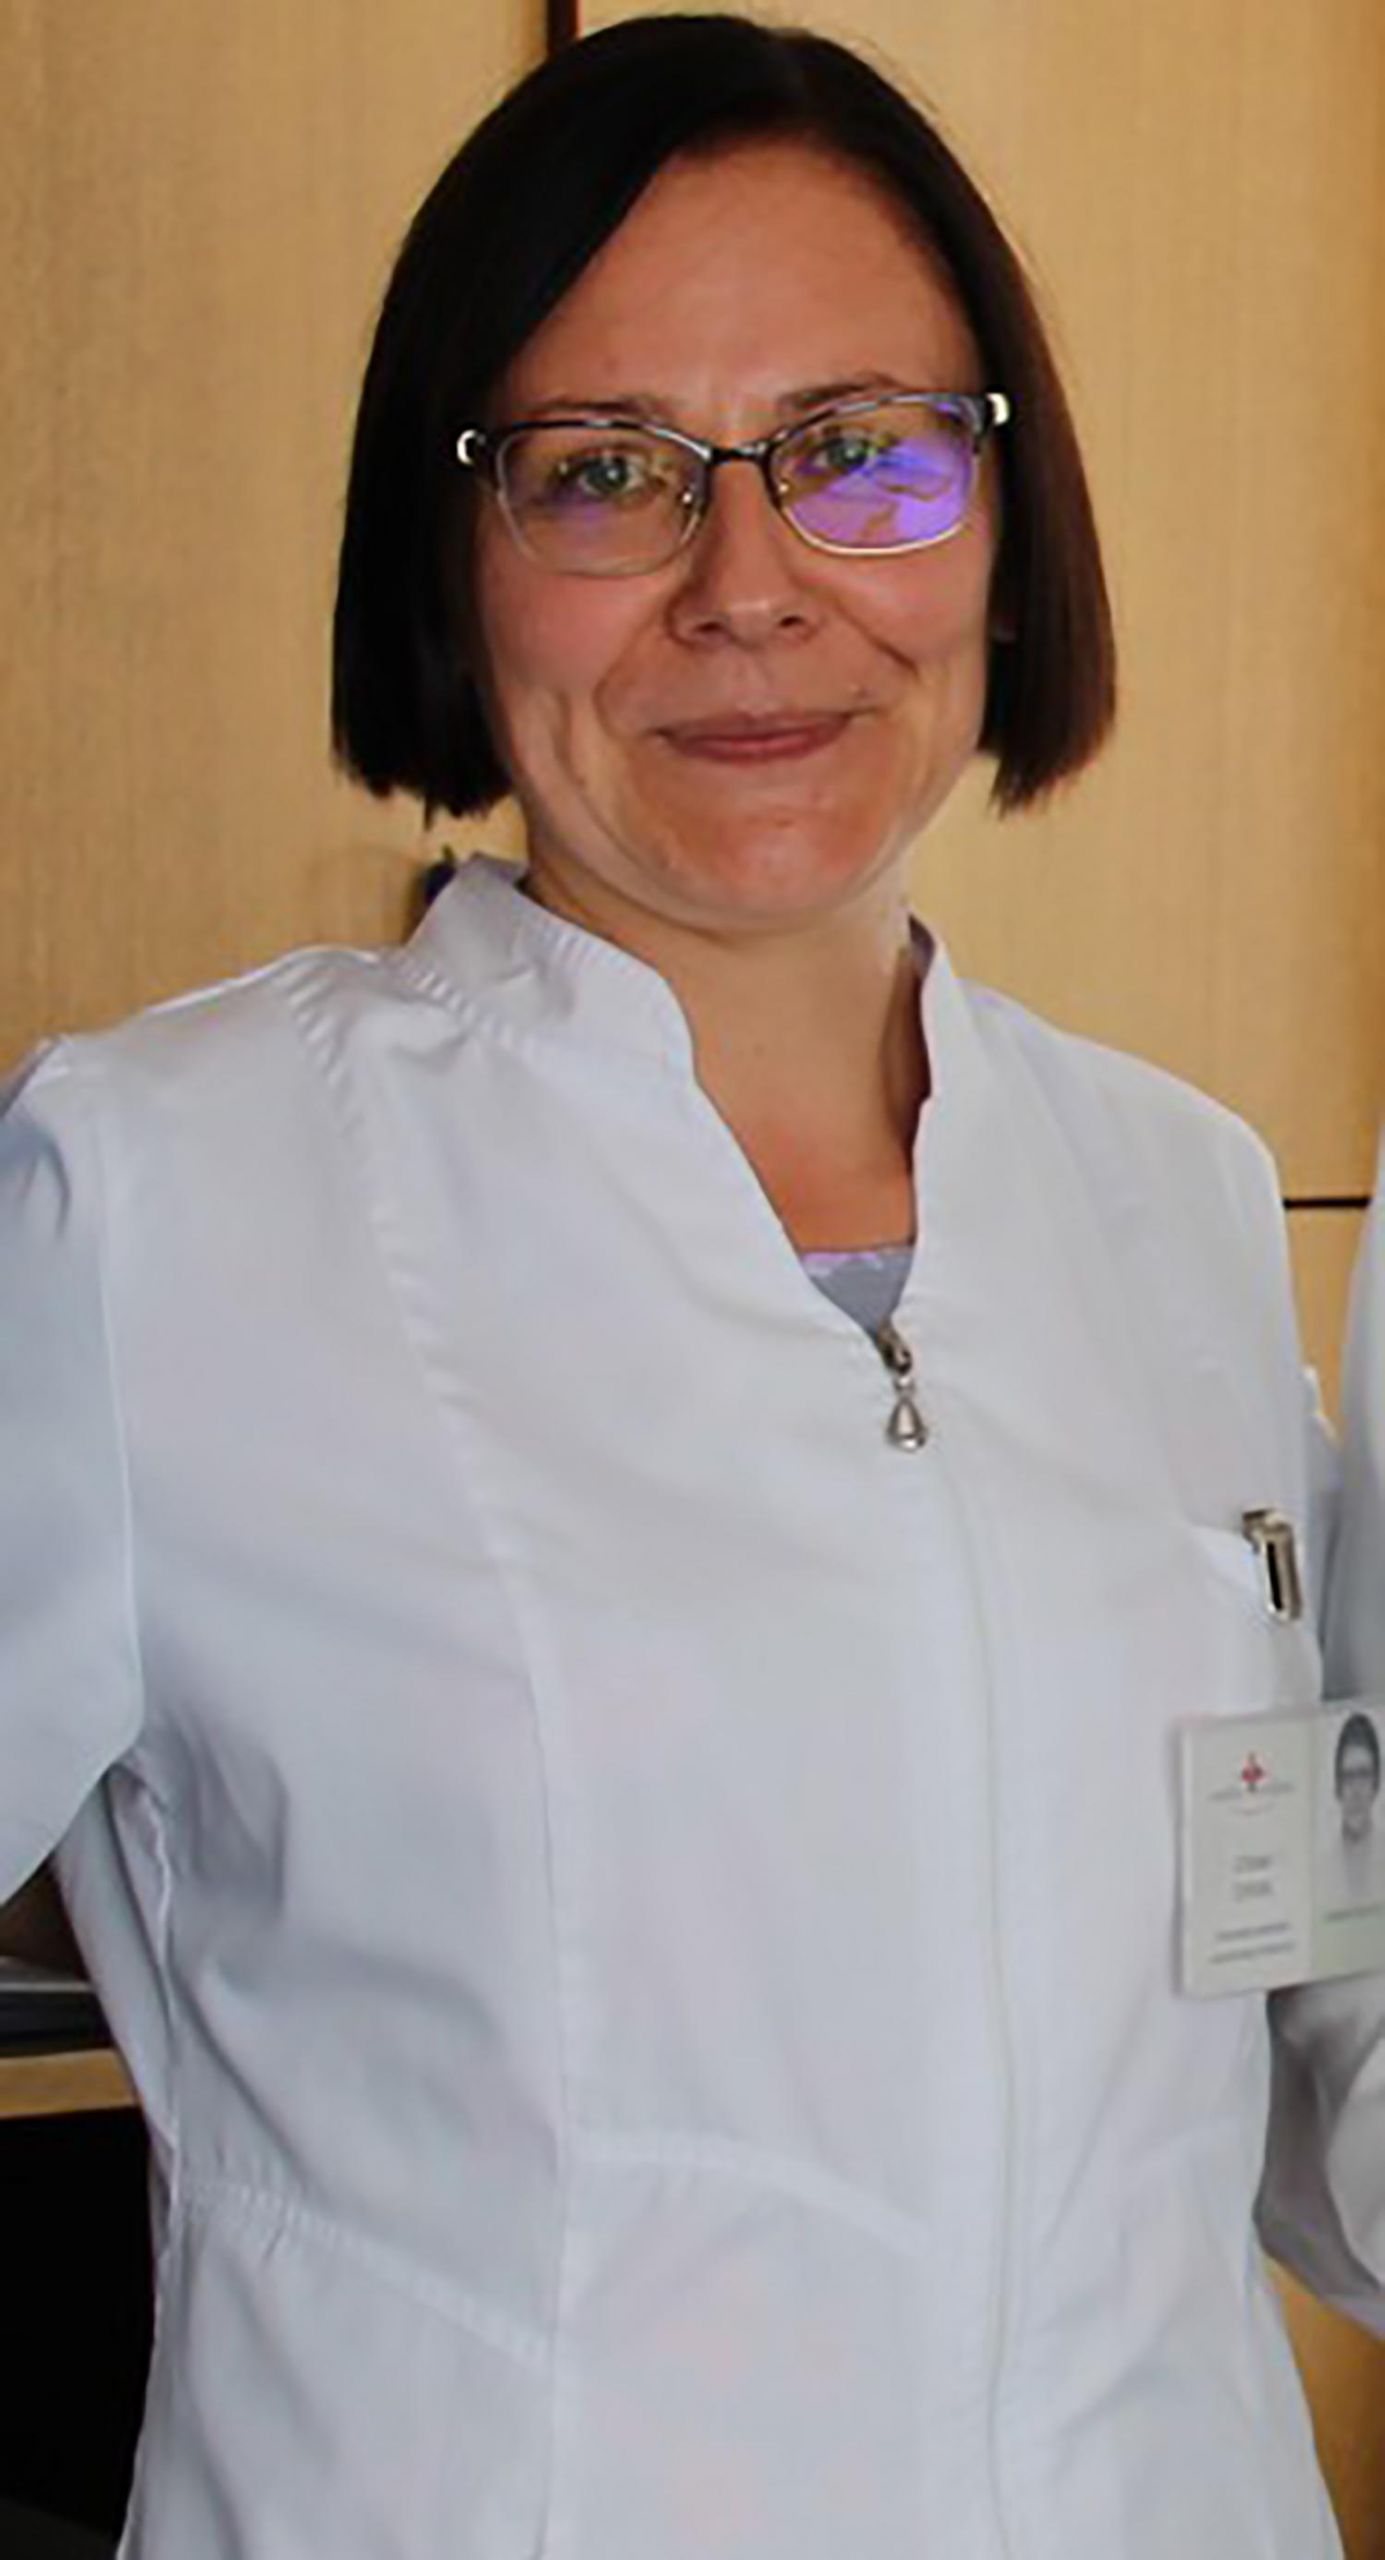 Konkurse nugalėjo G. Čepienė / Gydytoja Gitana Čepienė.